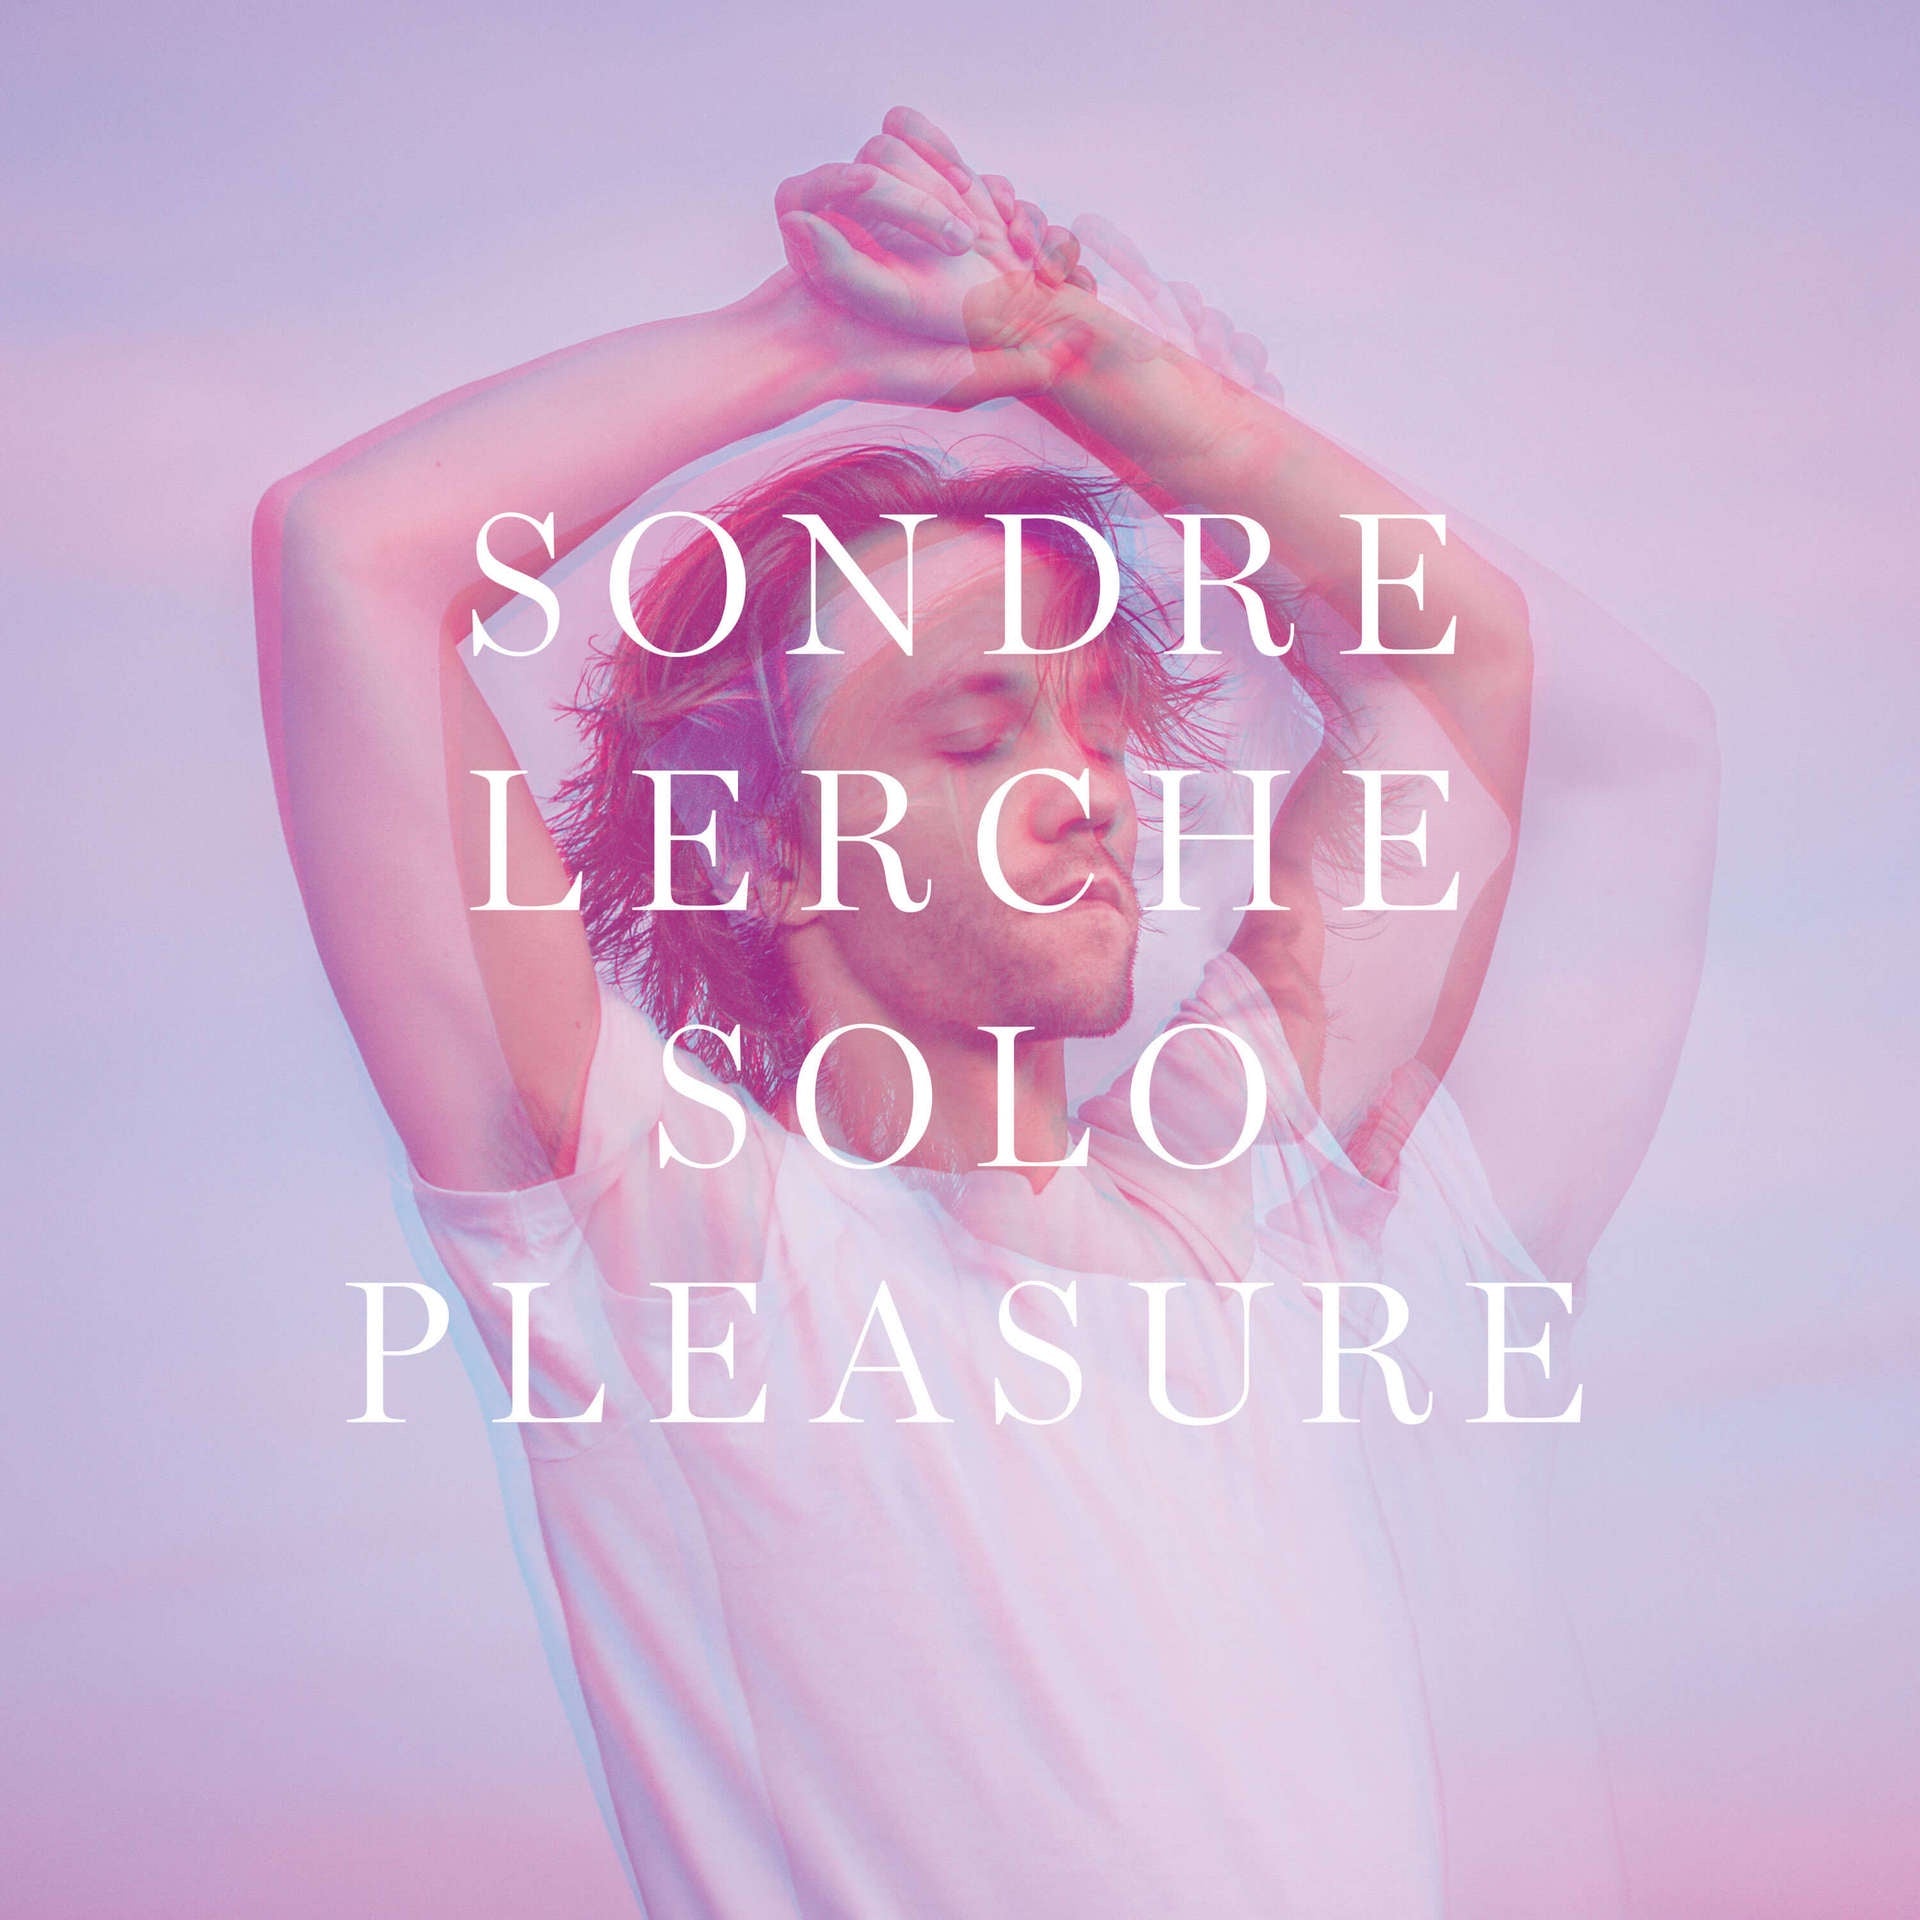 Sondre Lerche - Solo Pleasure - New Vinyl Record 2017 PLZ Record Store Day Black Friday Release (Limited to 750) - Pop